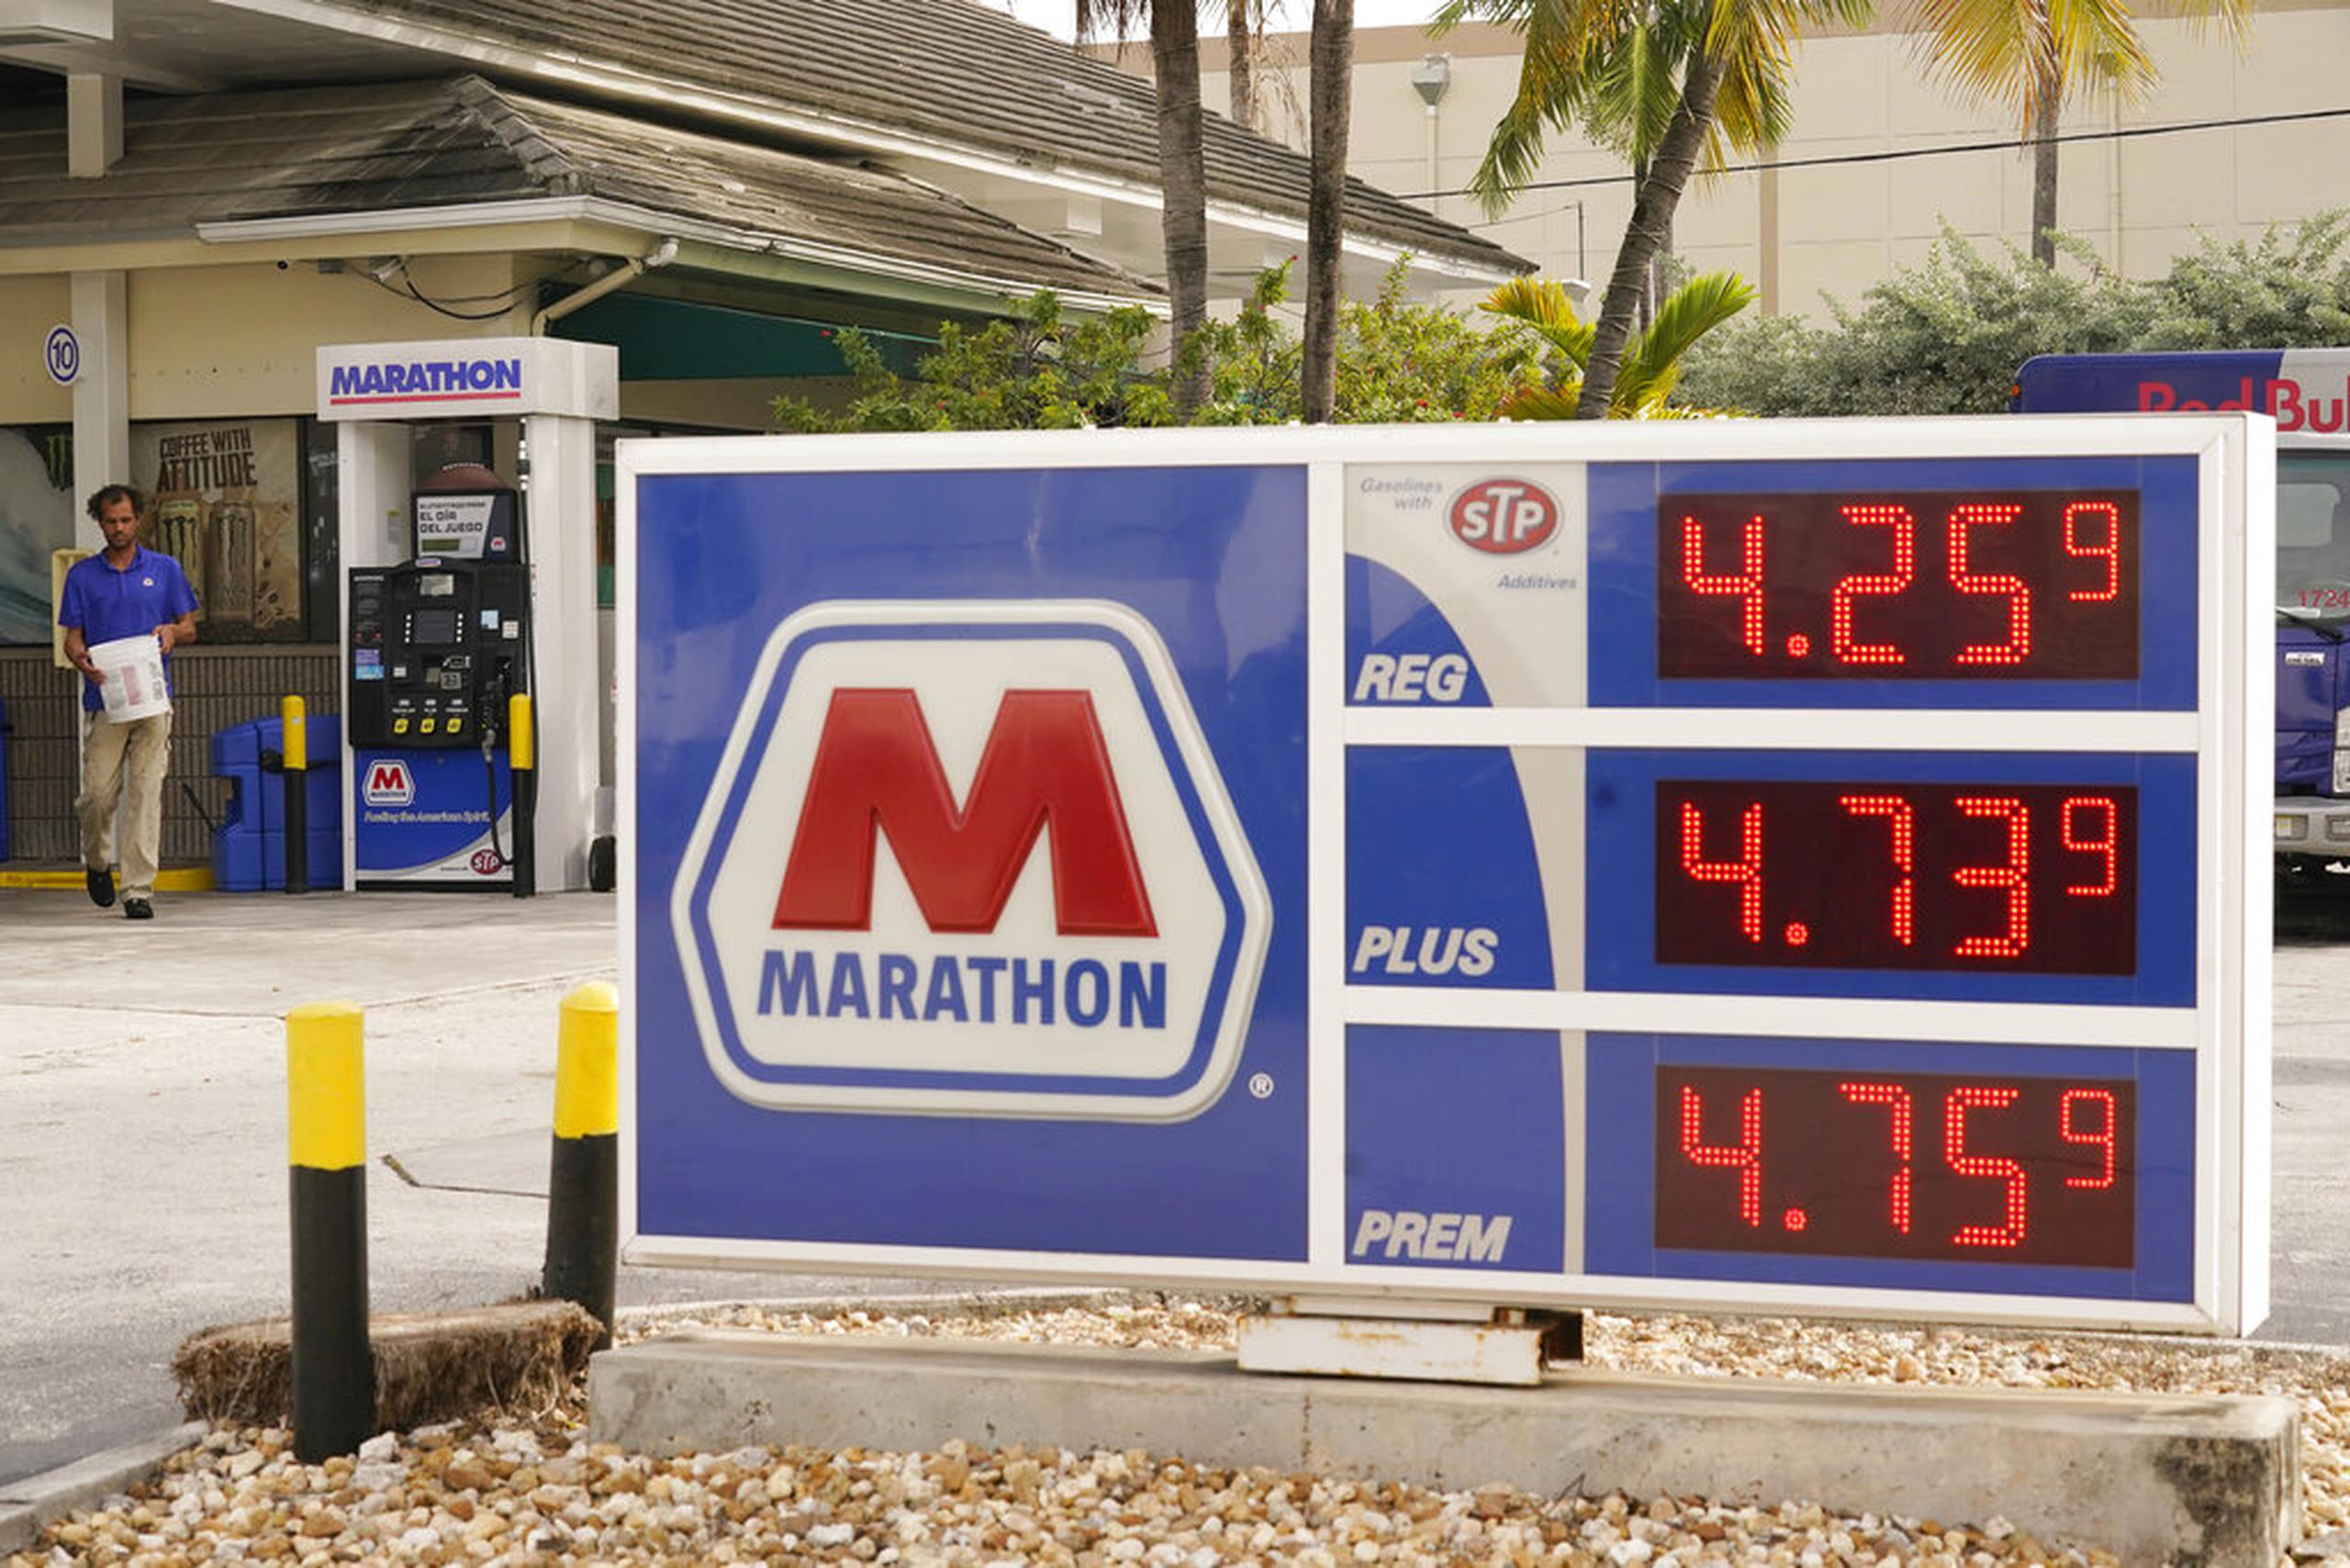 Los precios de la gasolina en una estación de Marathon el 17 de noviembre de 2021, en Miami Beach, Florida.